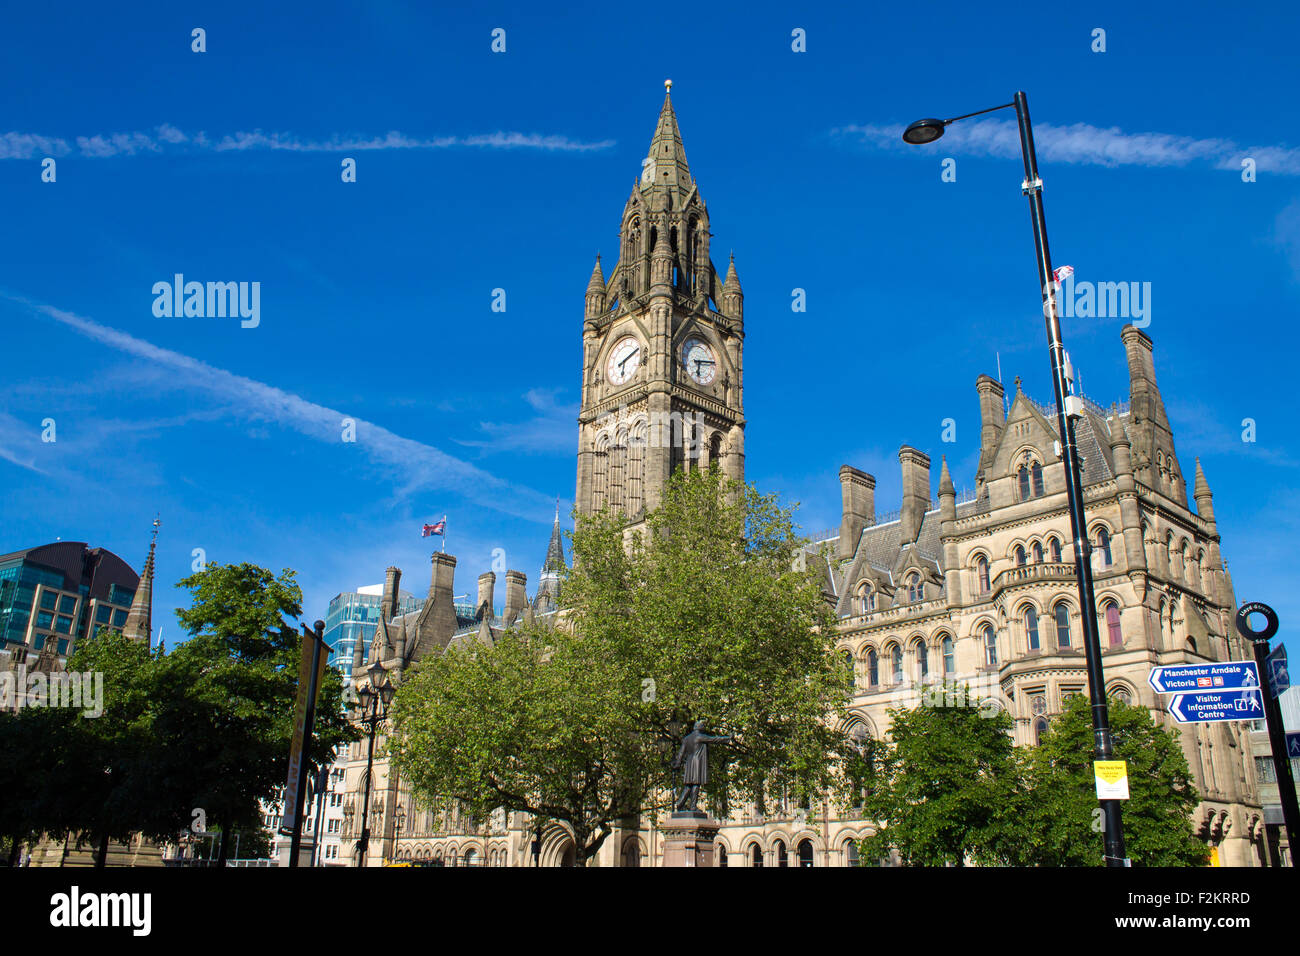 L'Hôtel de ville de Manchester à l'Albert Square, Manchester, Royaume-Uni. Ciel bleu. Banque D'Images